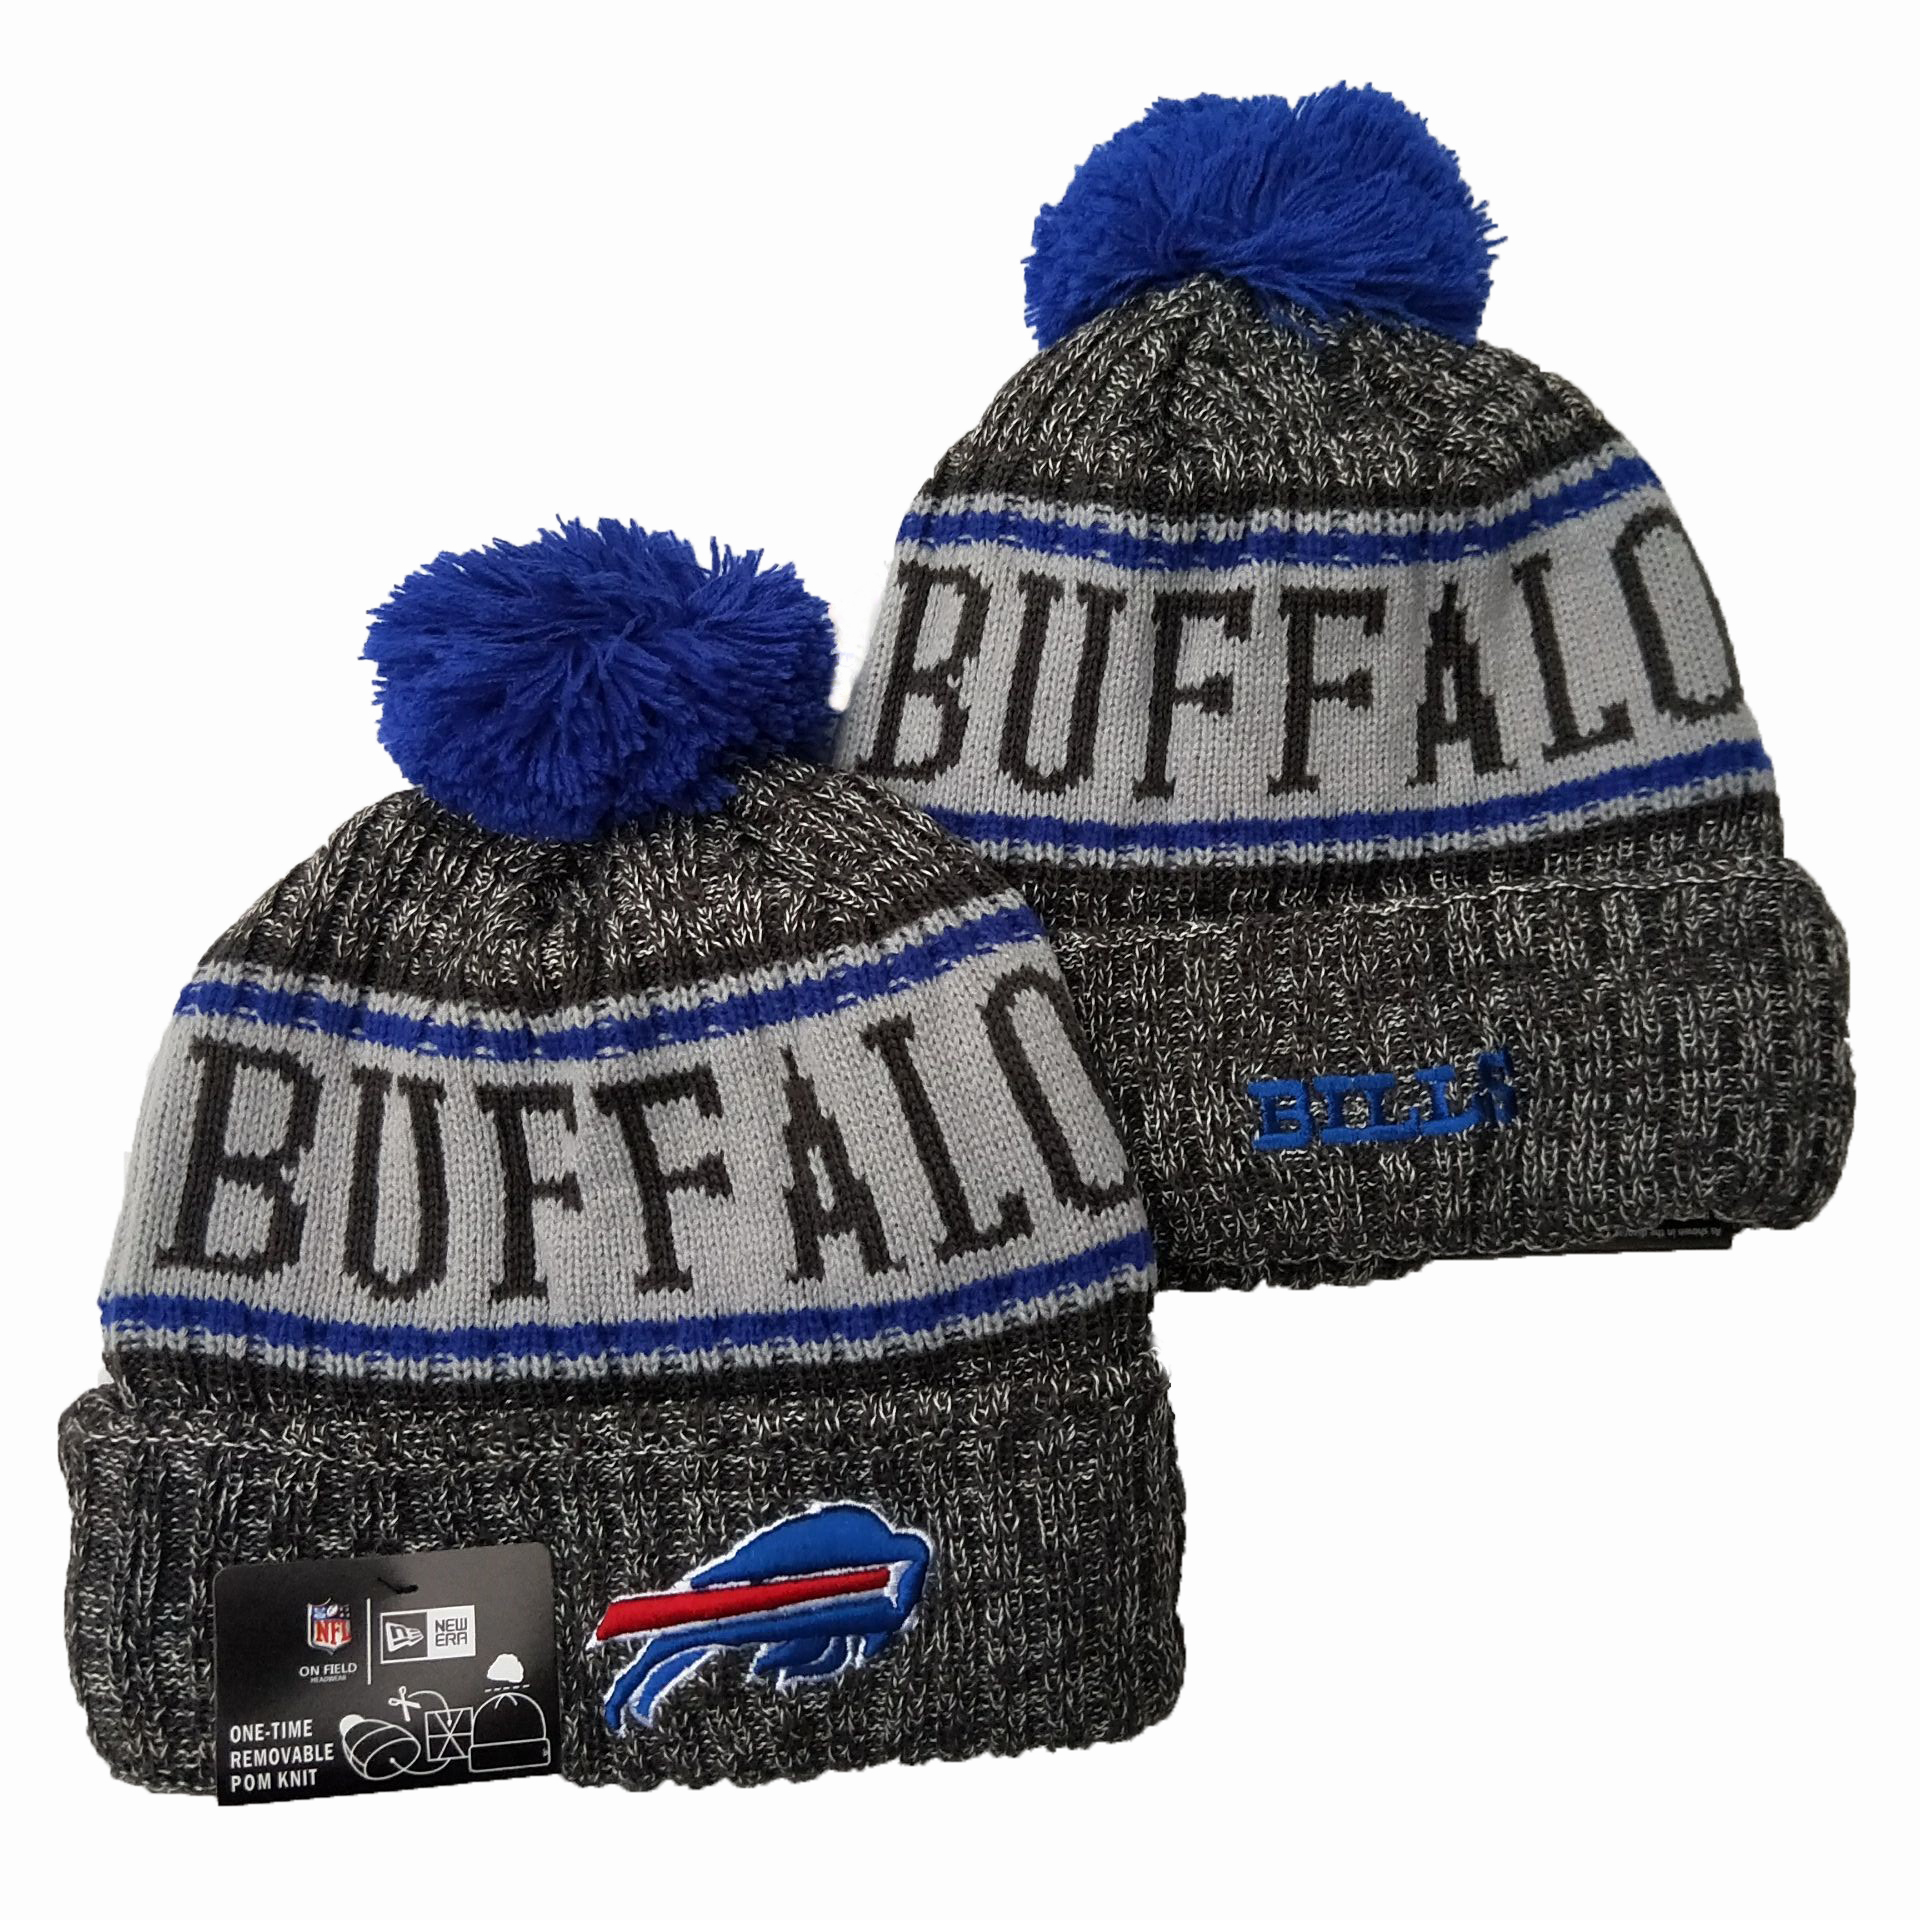 Buffalo Bills Knit Hats 039